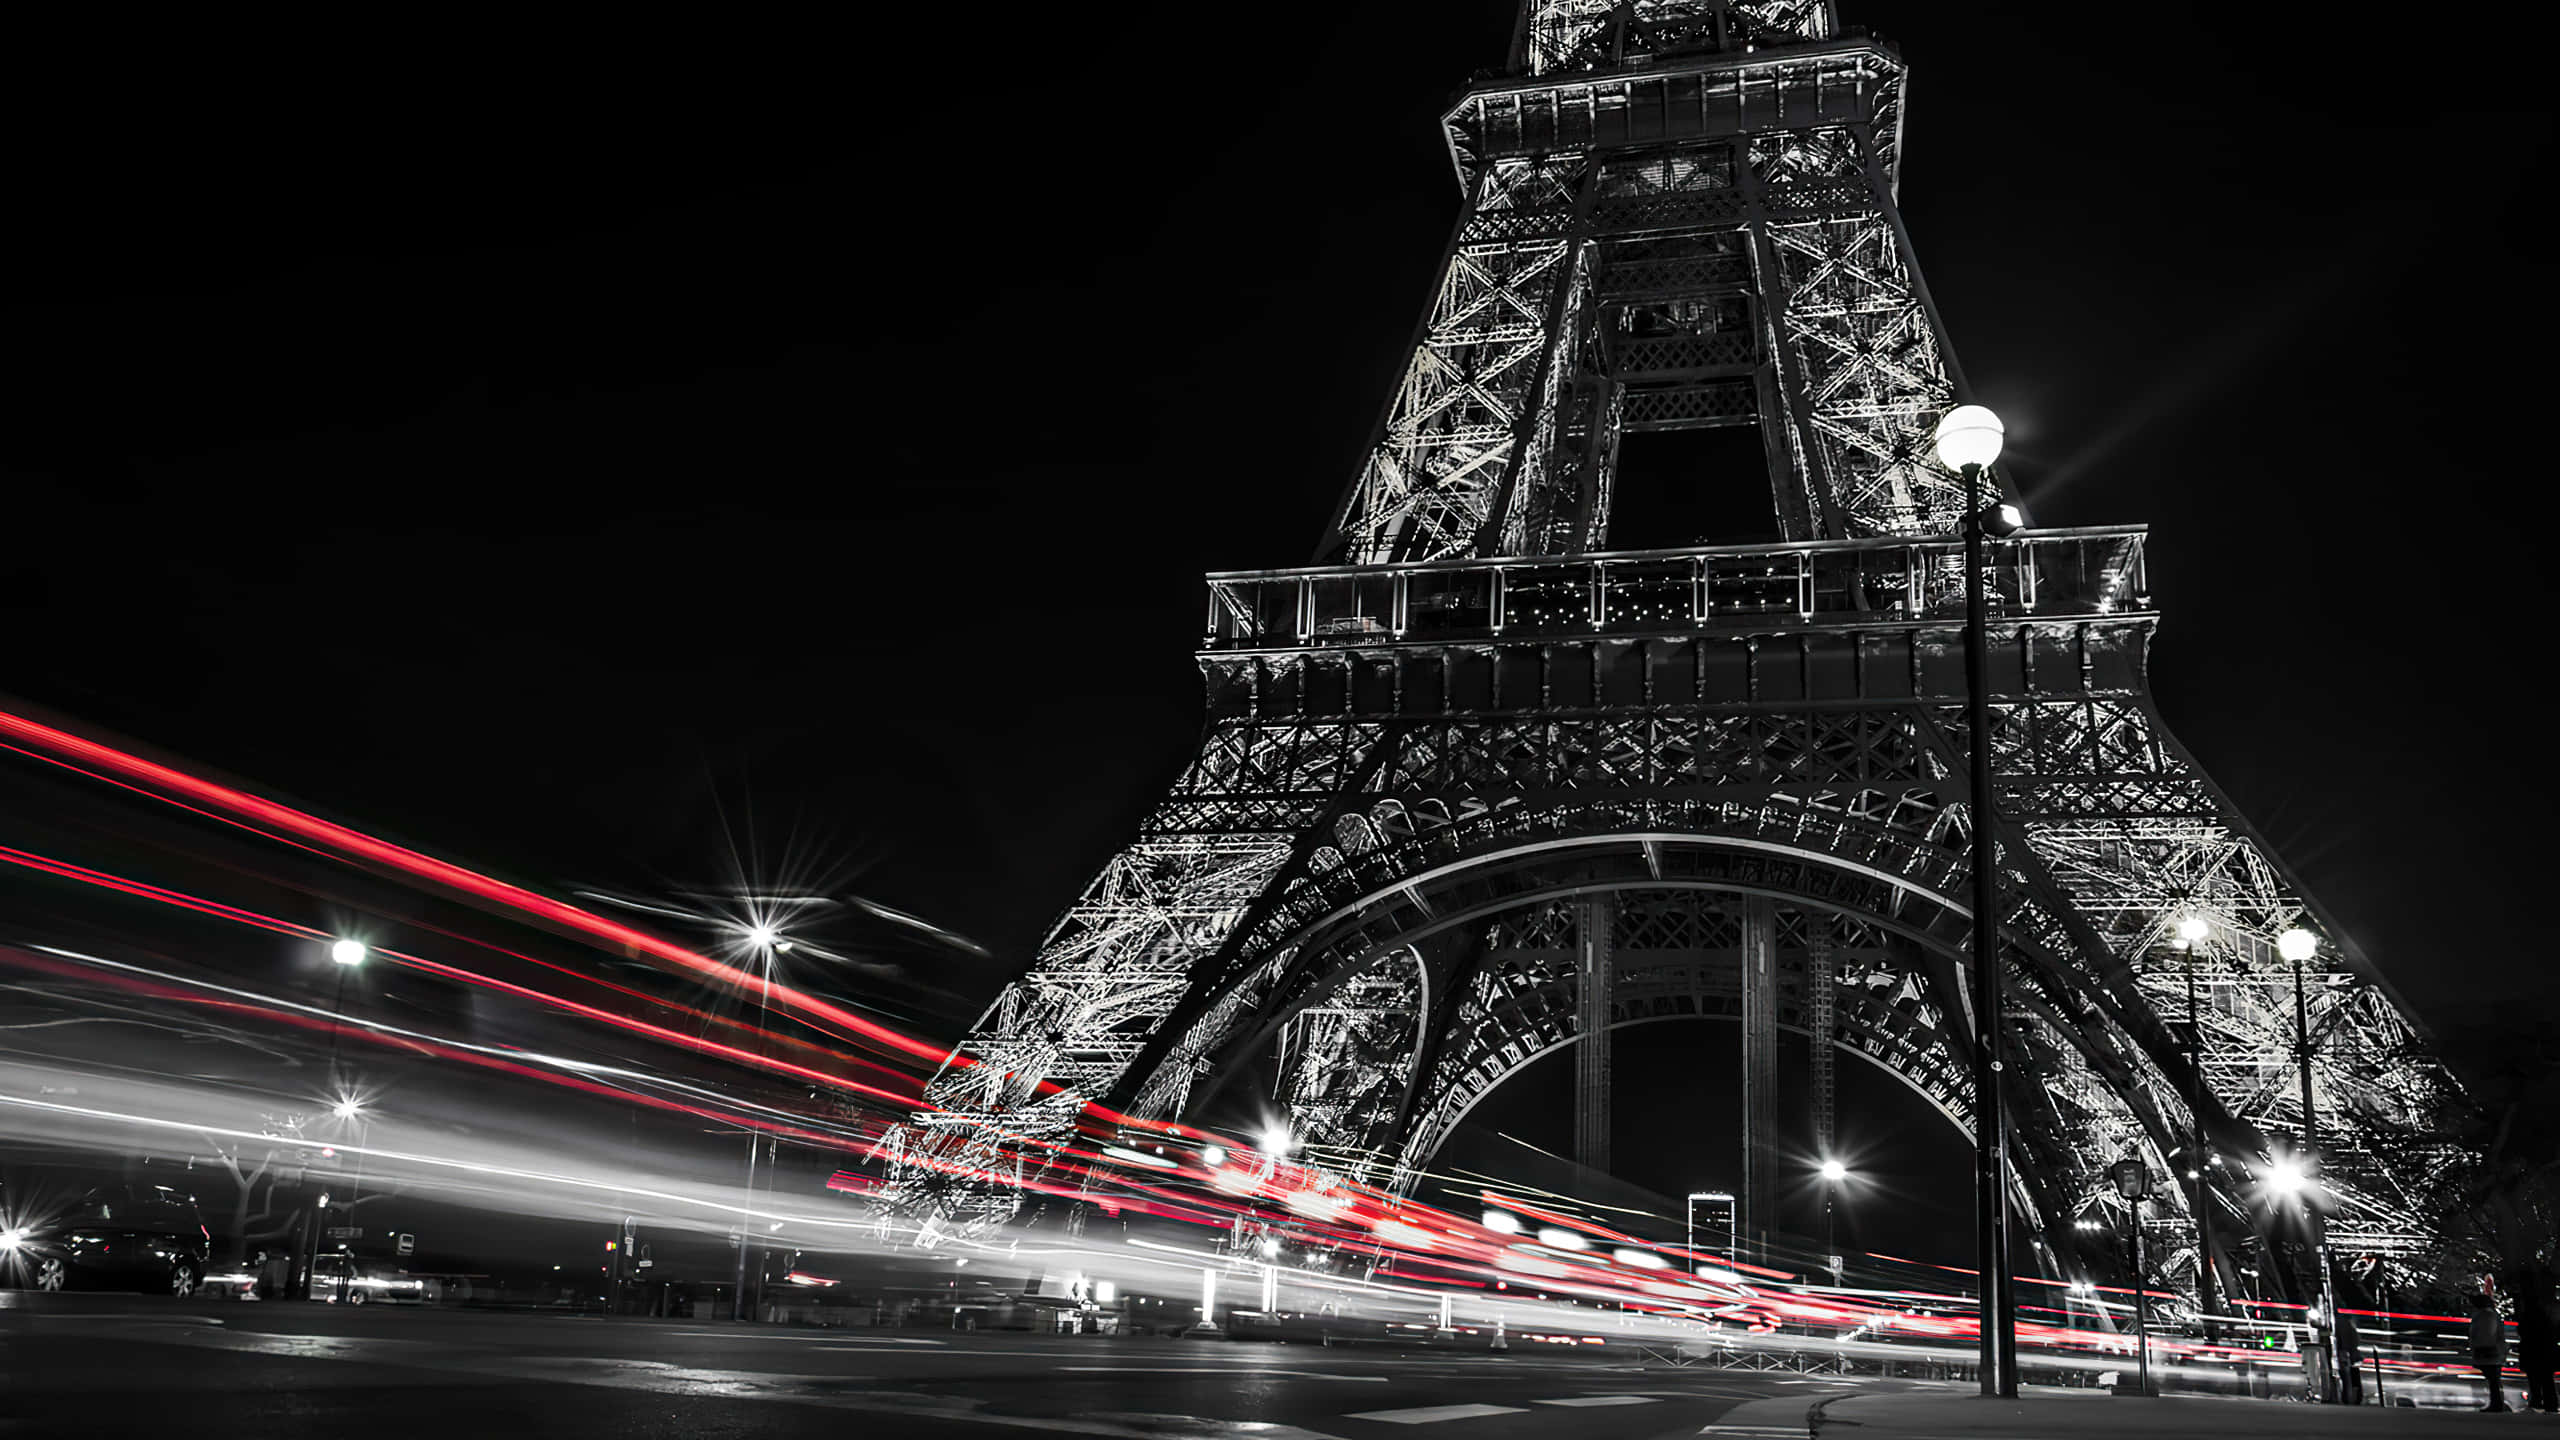 Besuchergenießen Den Einzigartig Romantischen Blick Auf Den Eiffelturm Bei Nacht.